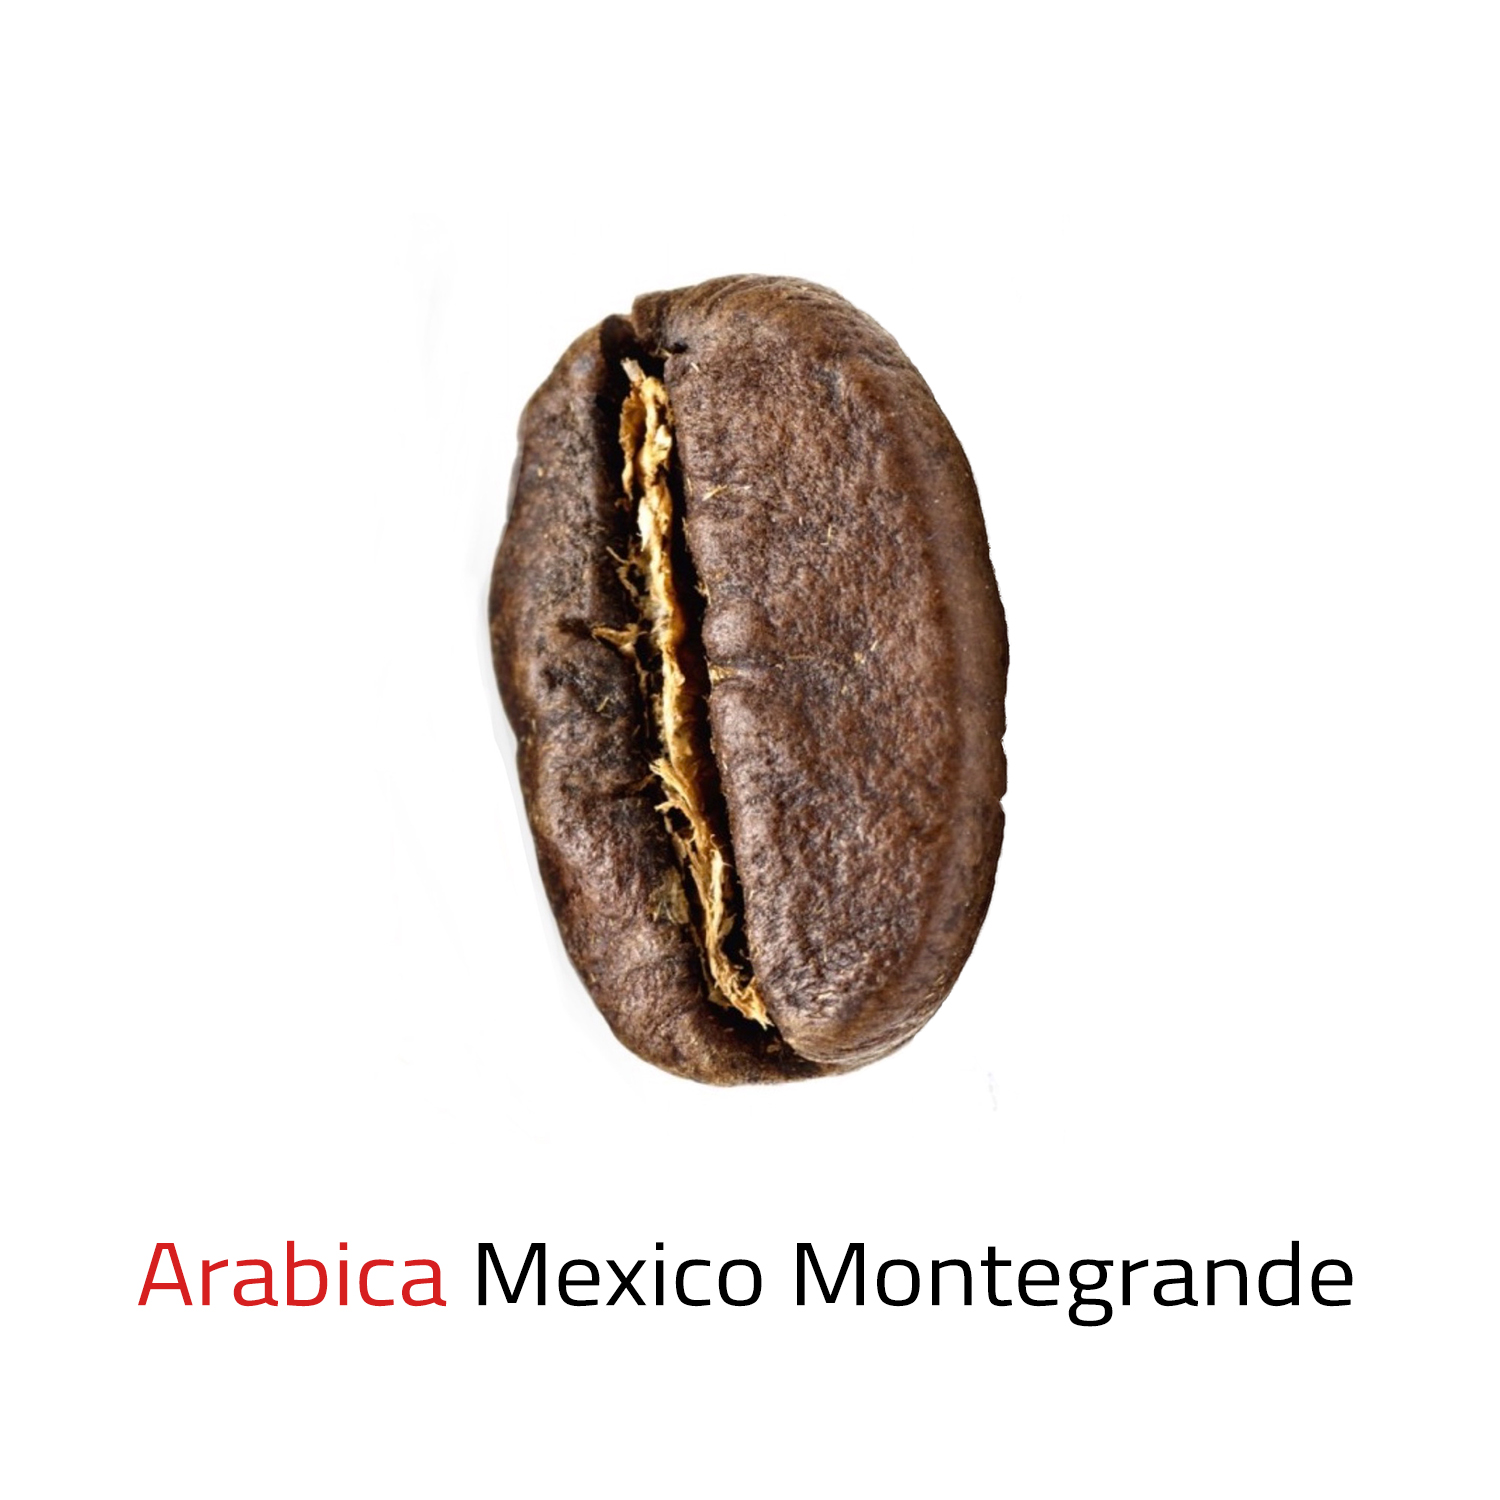 Čerstvě pražená káva mletá Arabica Mexico Montegrande